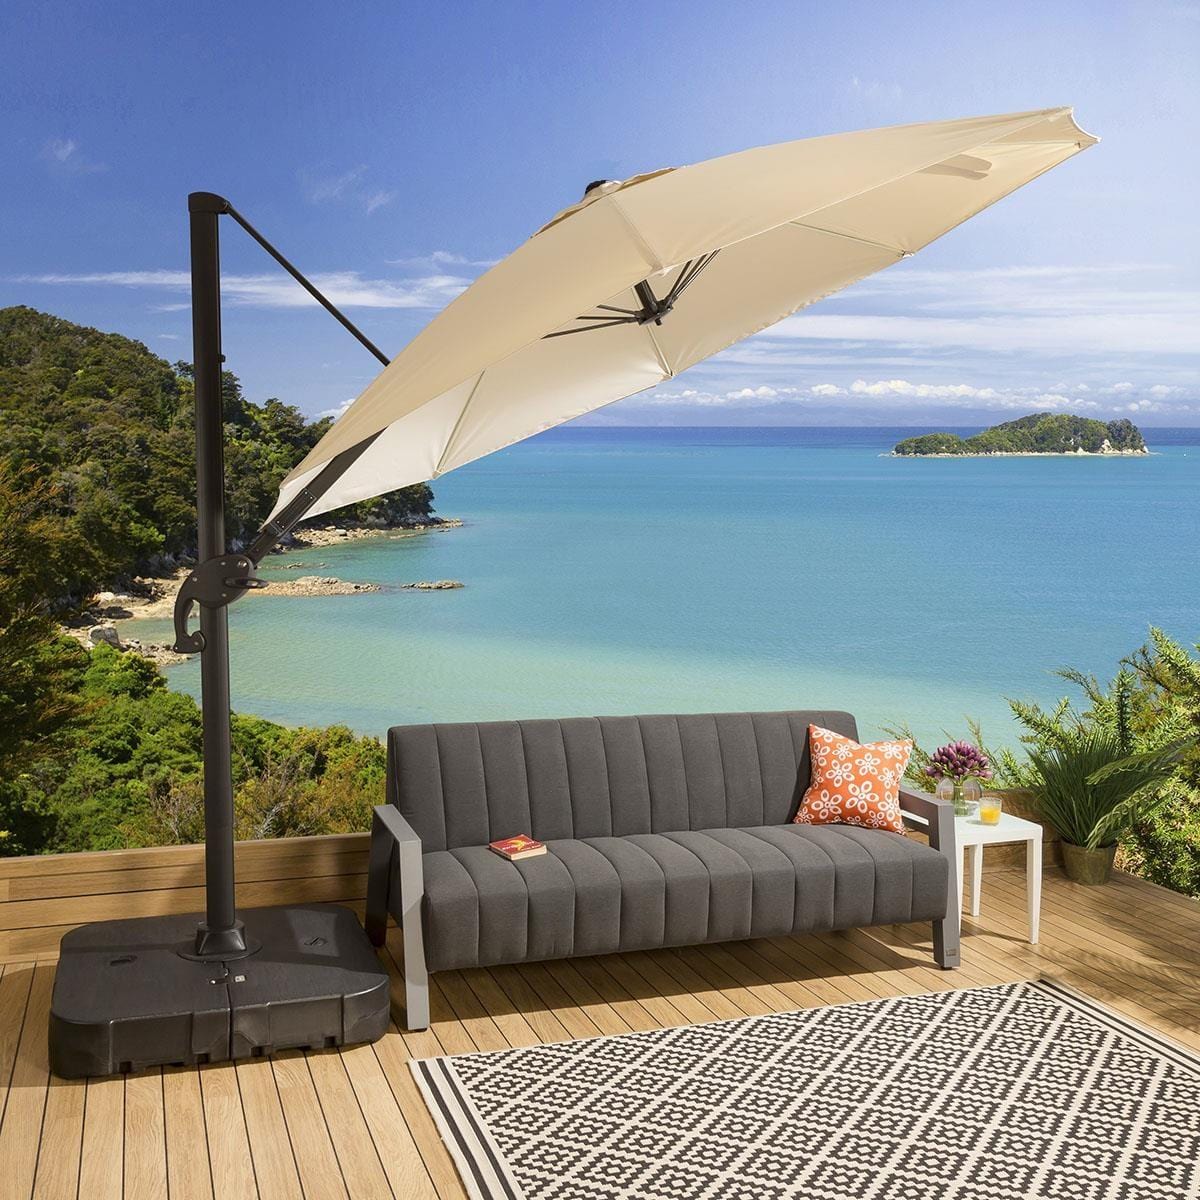 Quatropi Cream Cantilever Garden Parasol 300cm - Tilt/Swivel Unbrella & Weighted Base